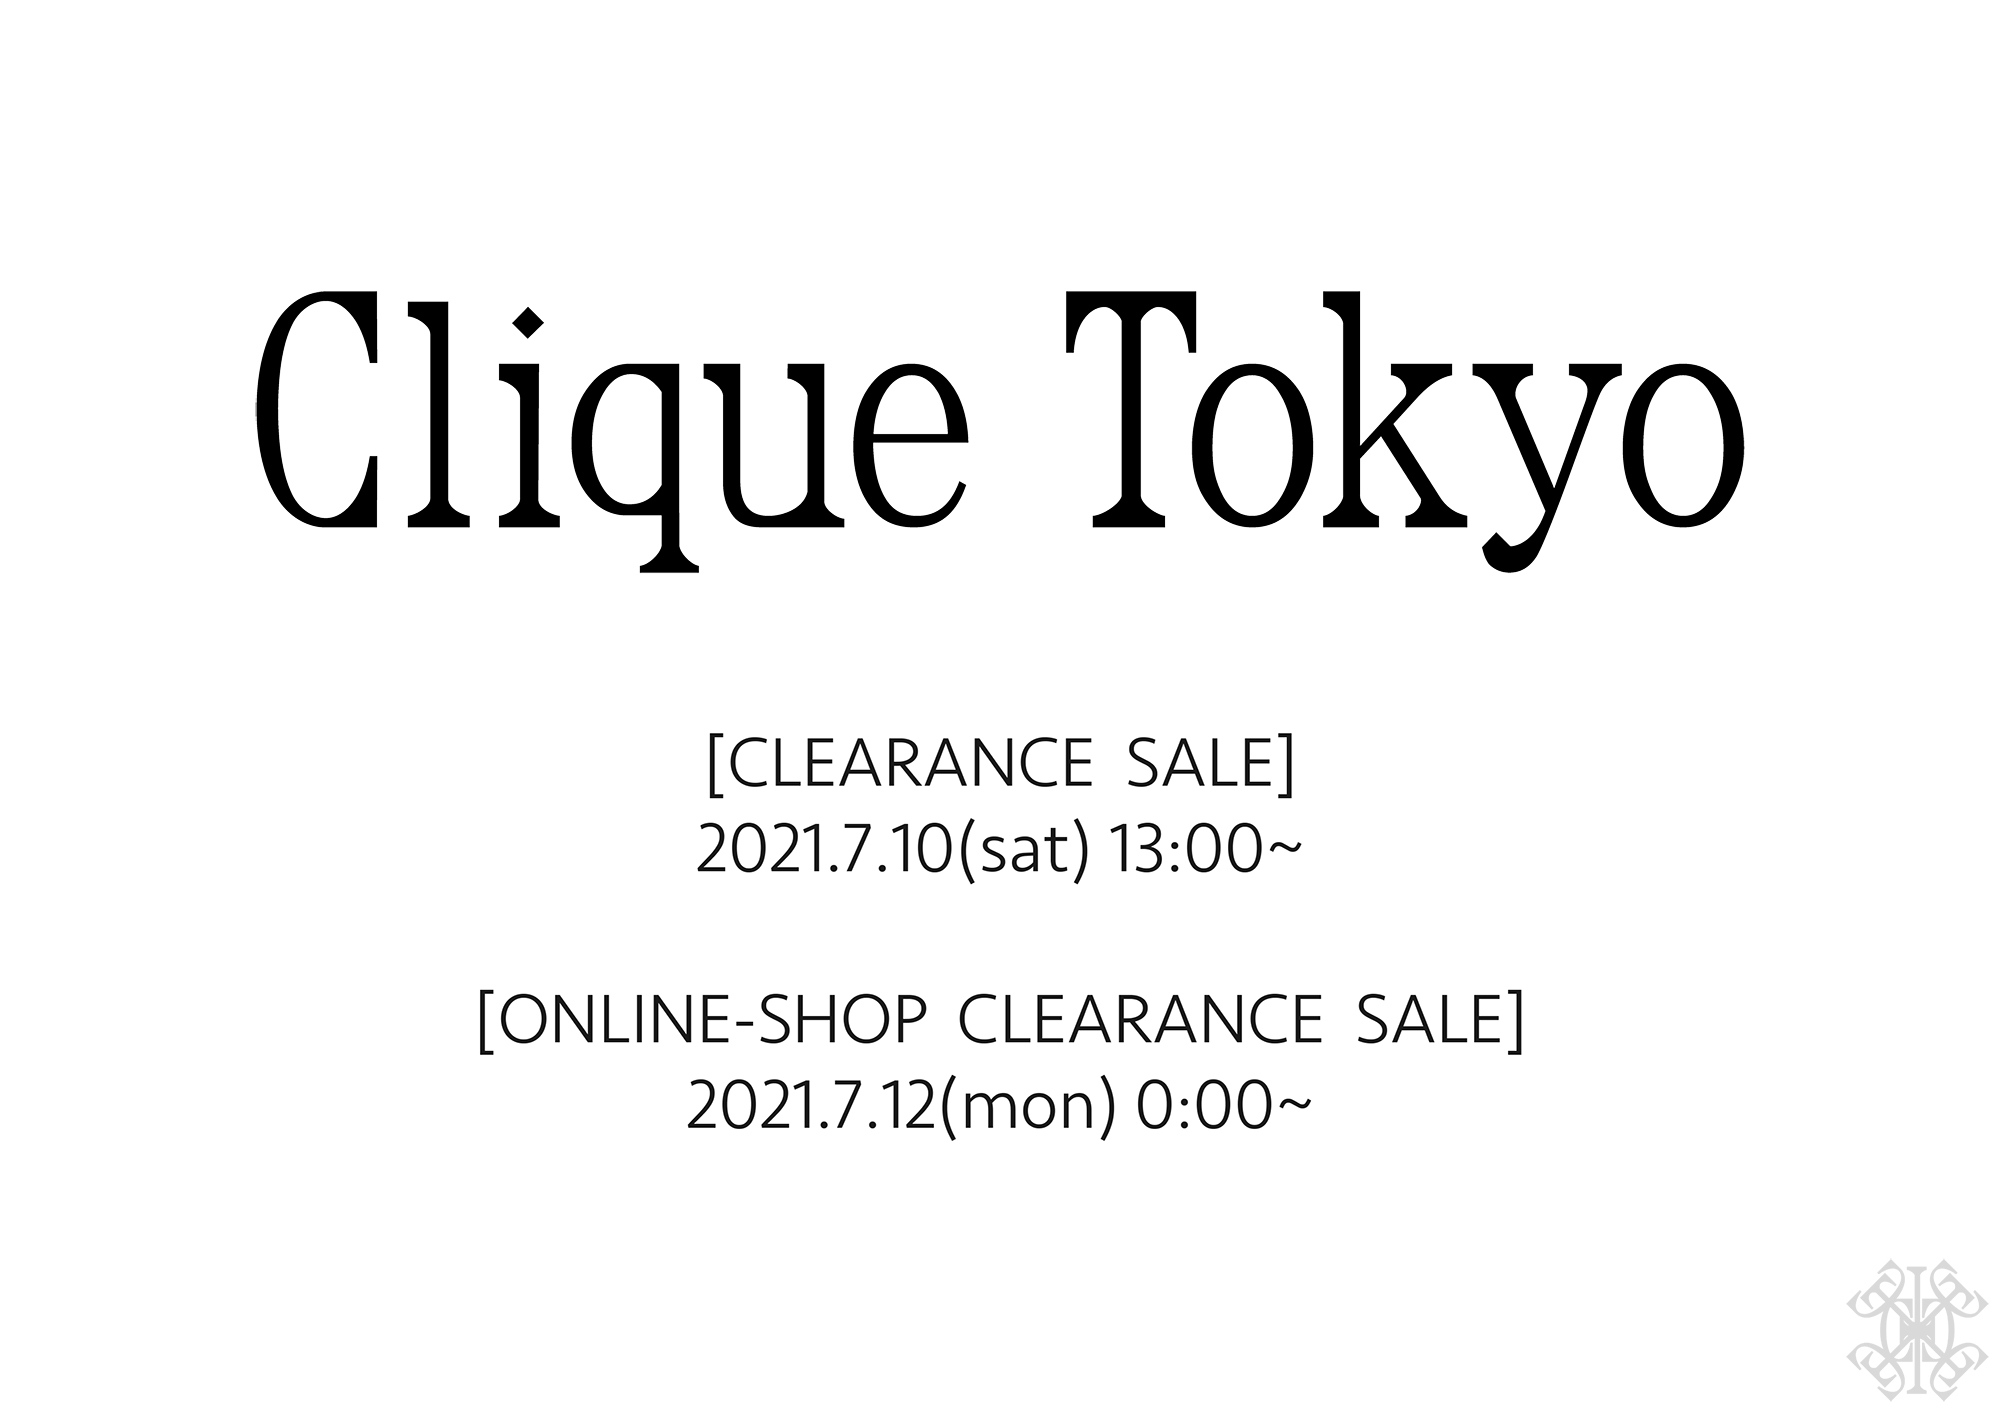 Clique Tokyo 重大発表です。一読いただければ幸いです。